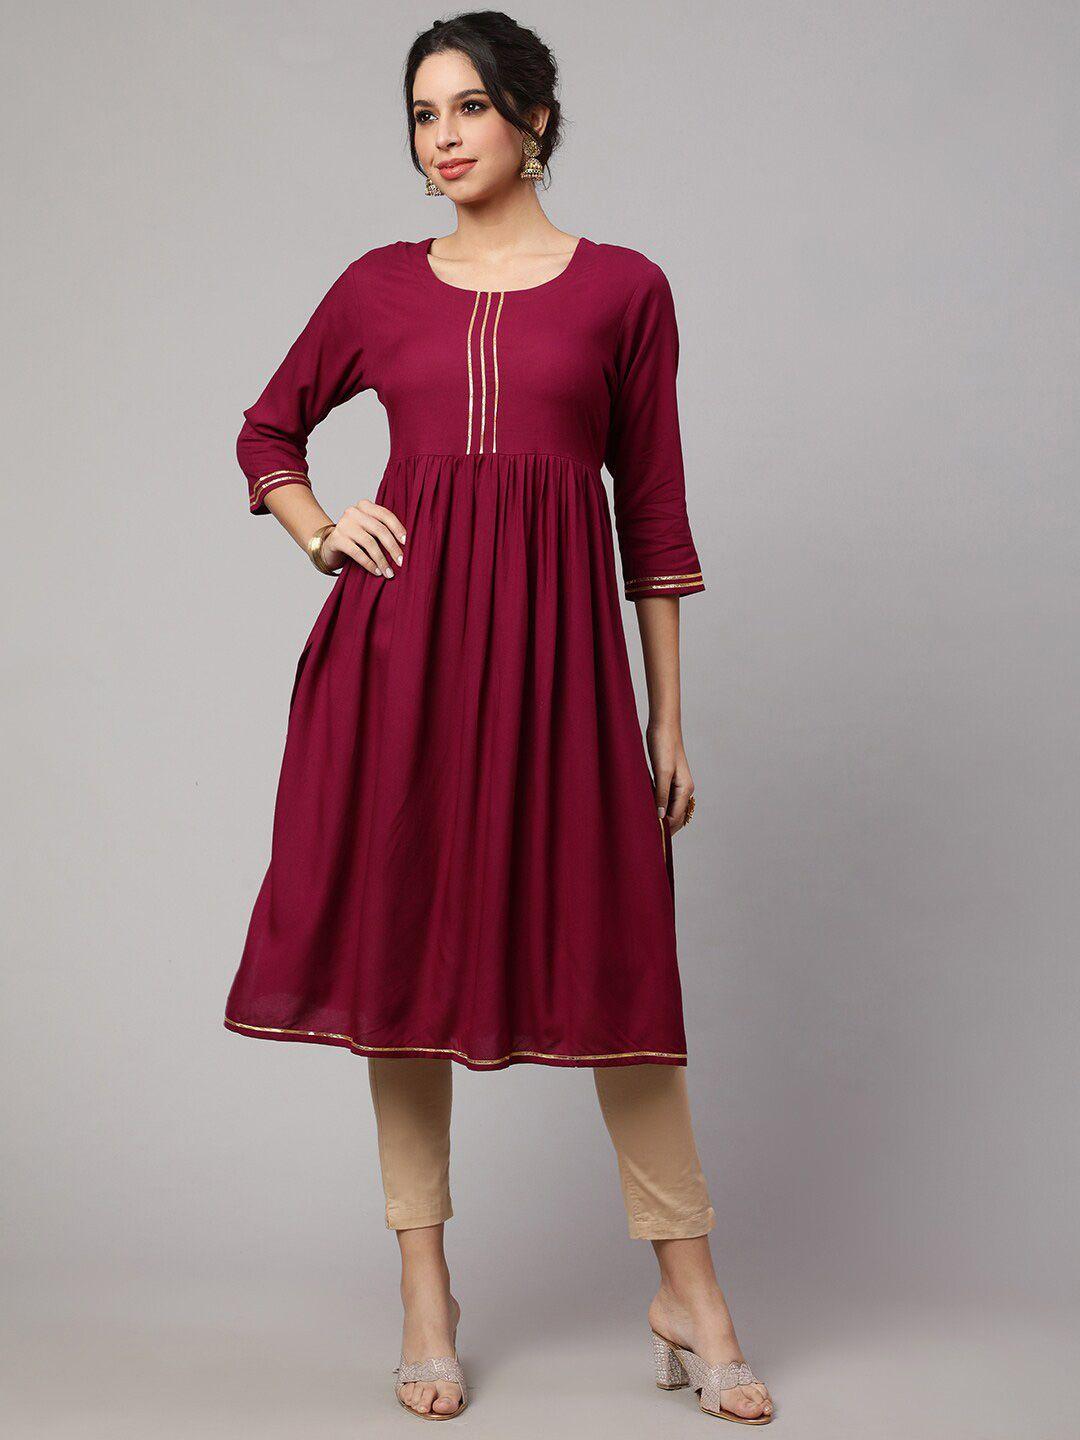 purshottam wala maroon fit & flare dress